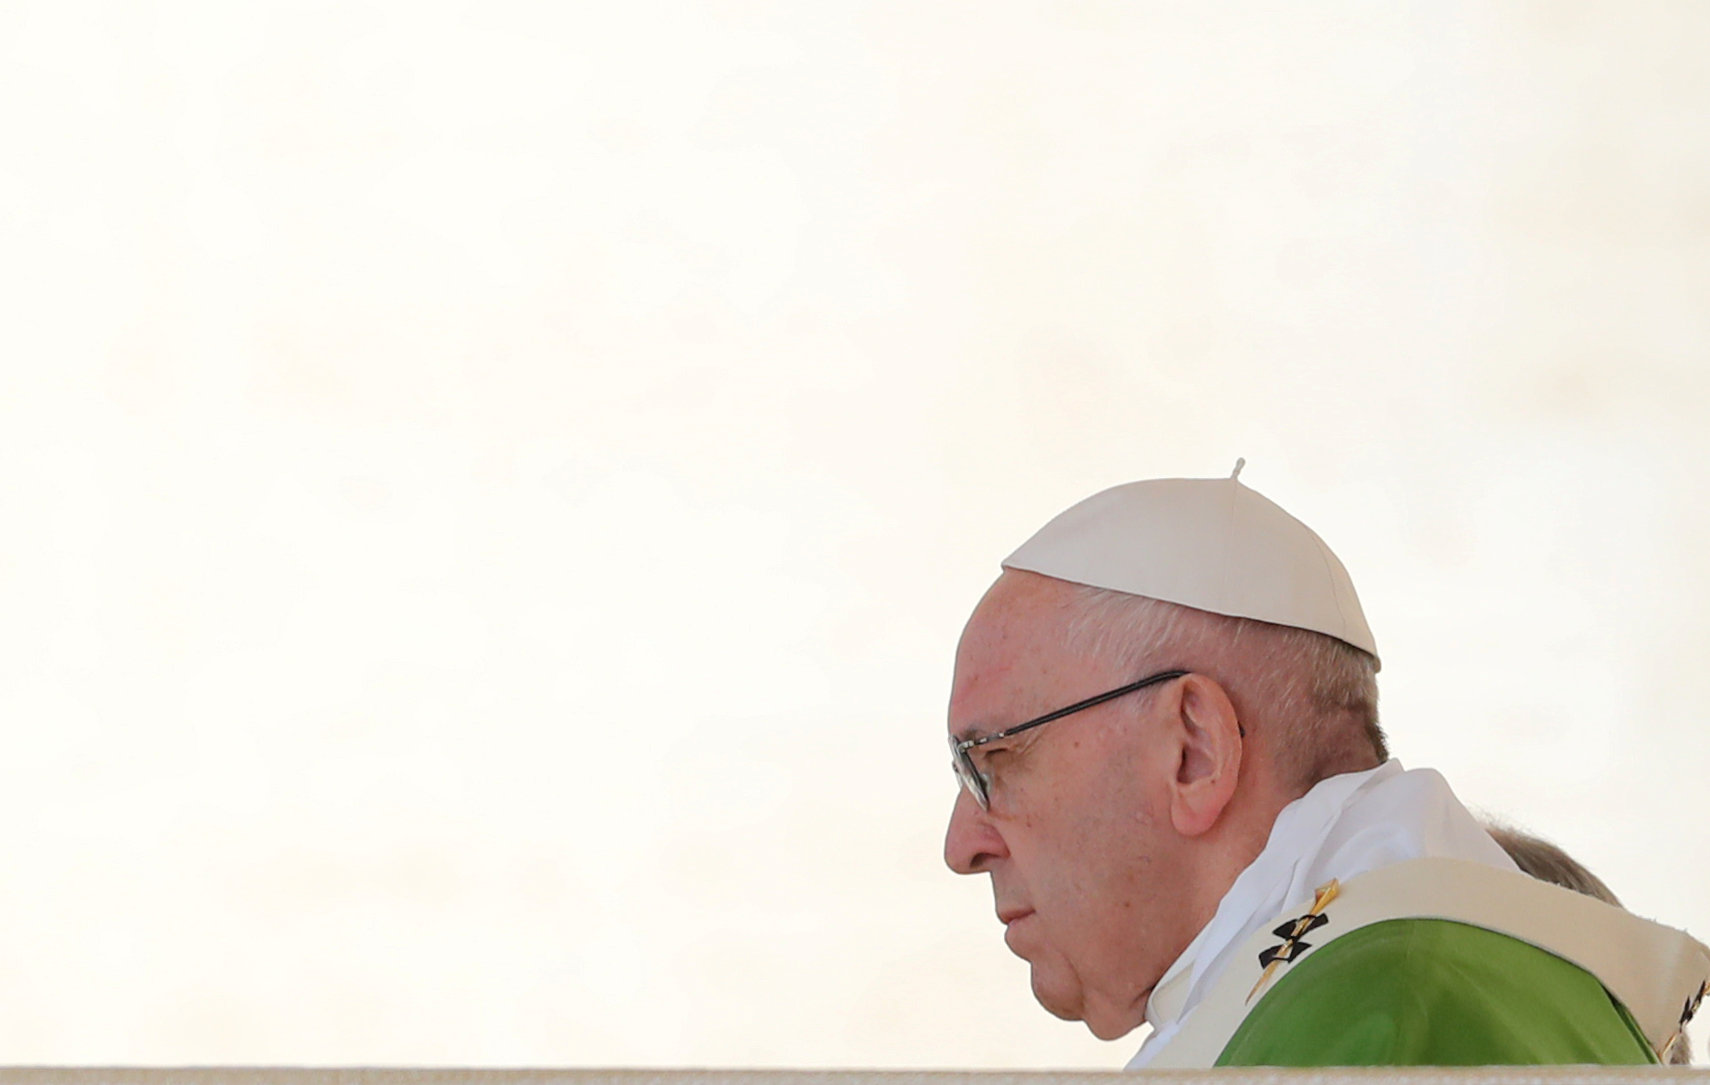 البابا يبدو مهموما بعد كثرة الحديث عن انتهاكات الأساقفة الجنسية